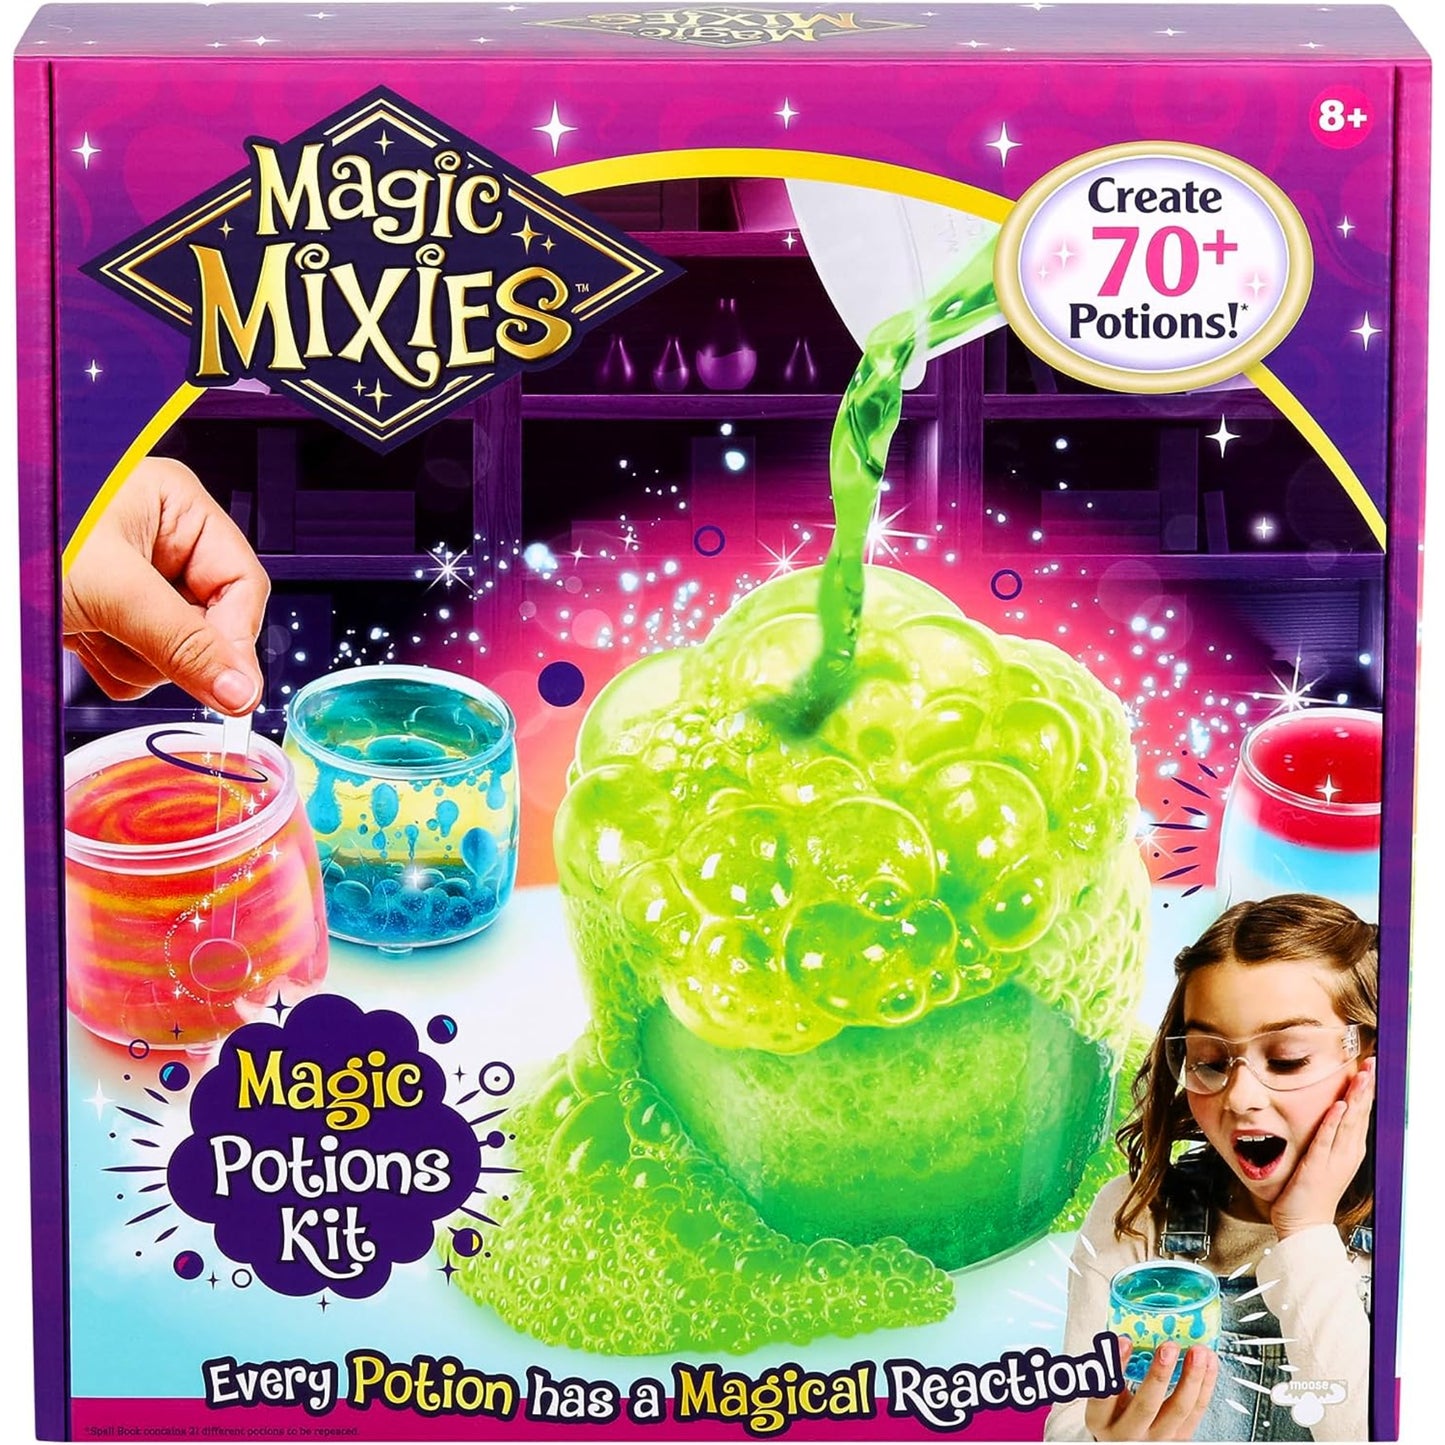 Magic Mixes